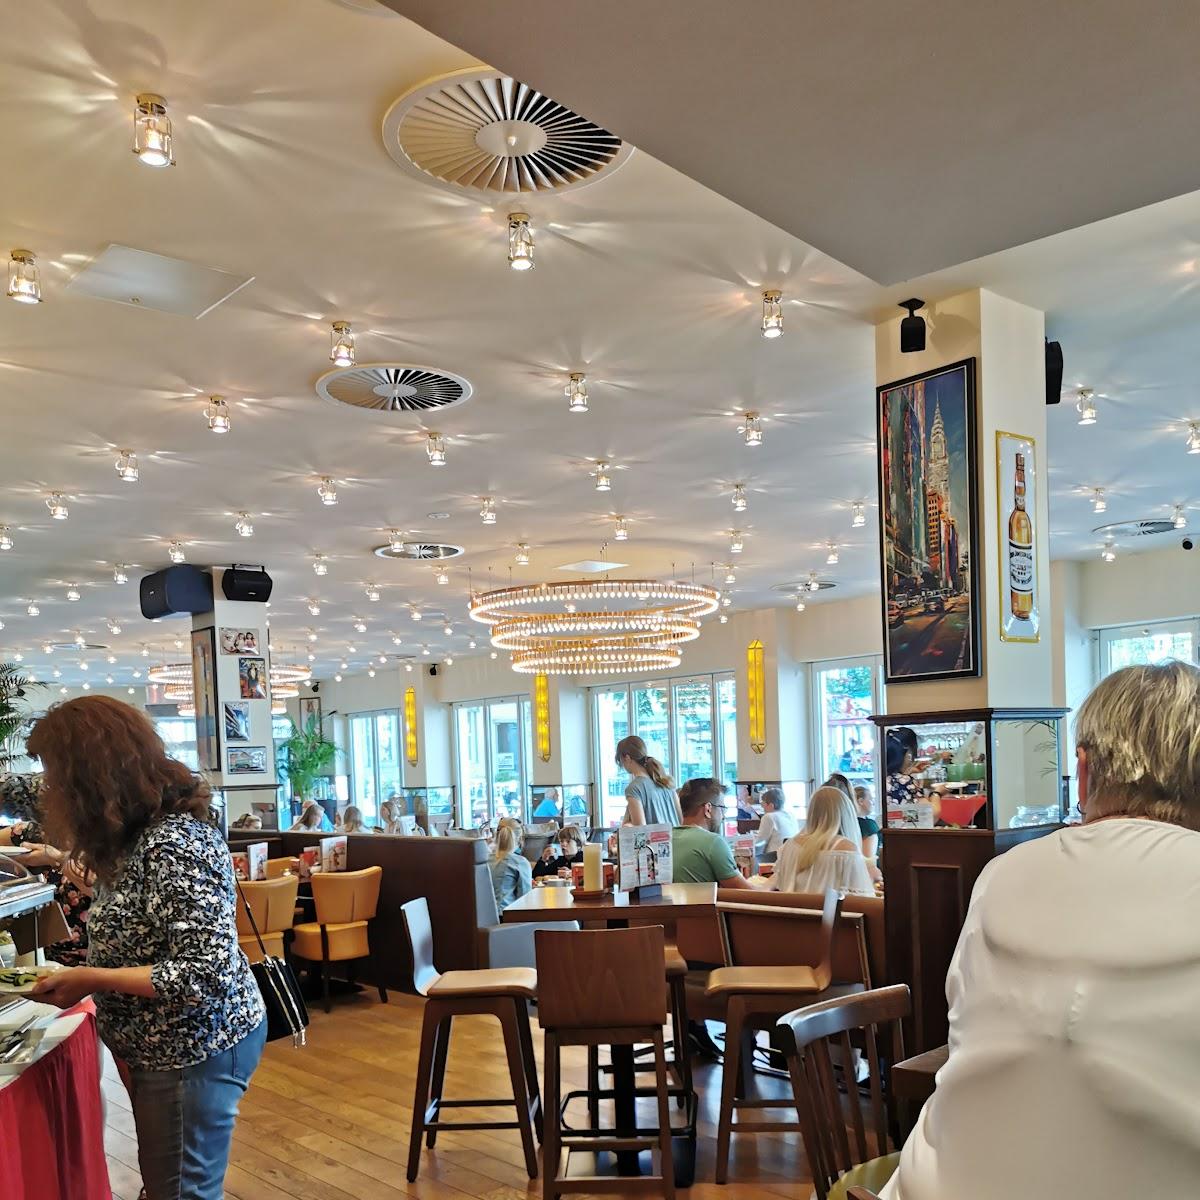 Restaurant "Cafe Extrablatt" in Soest